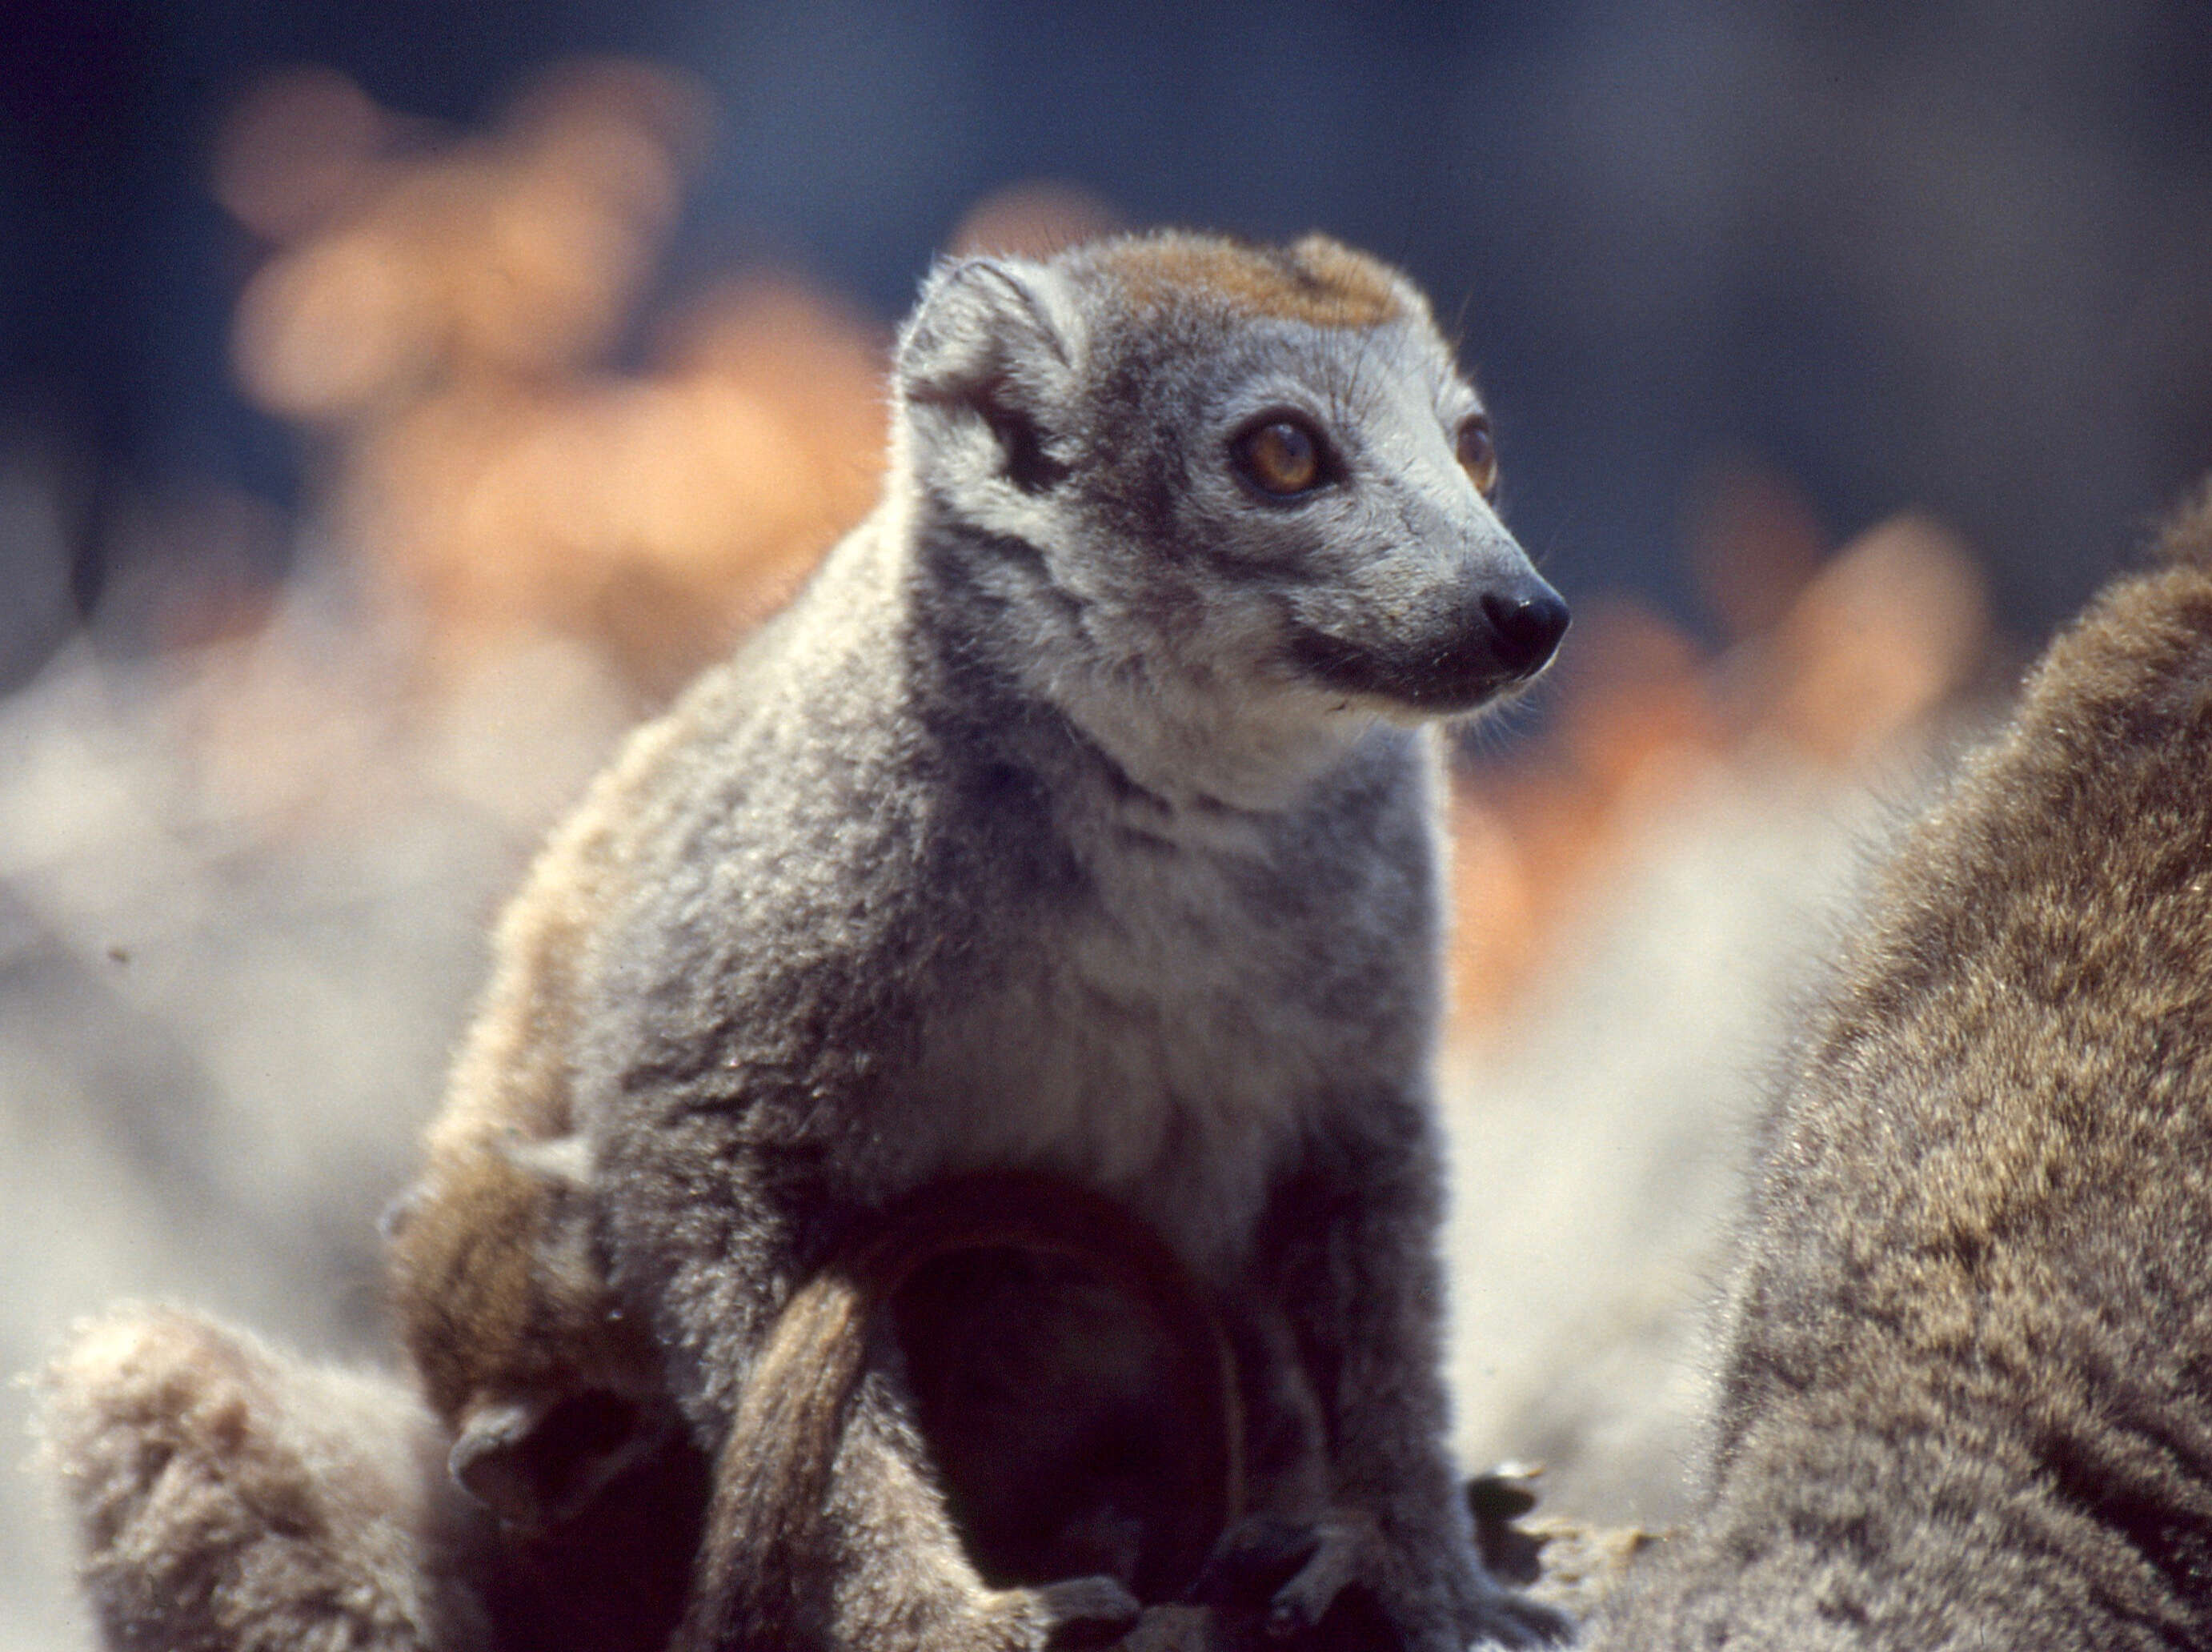 Image of Crowned Lemur